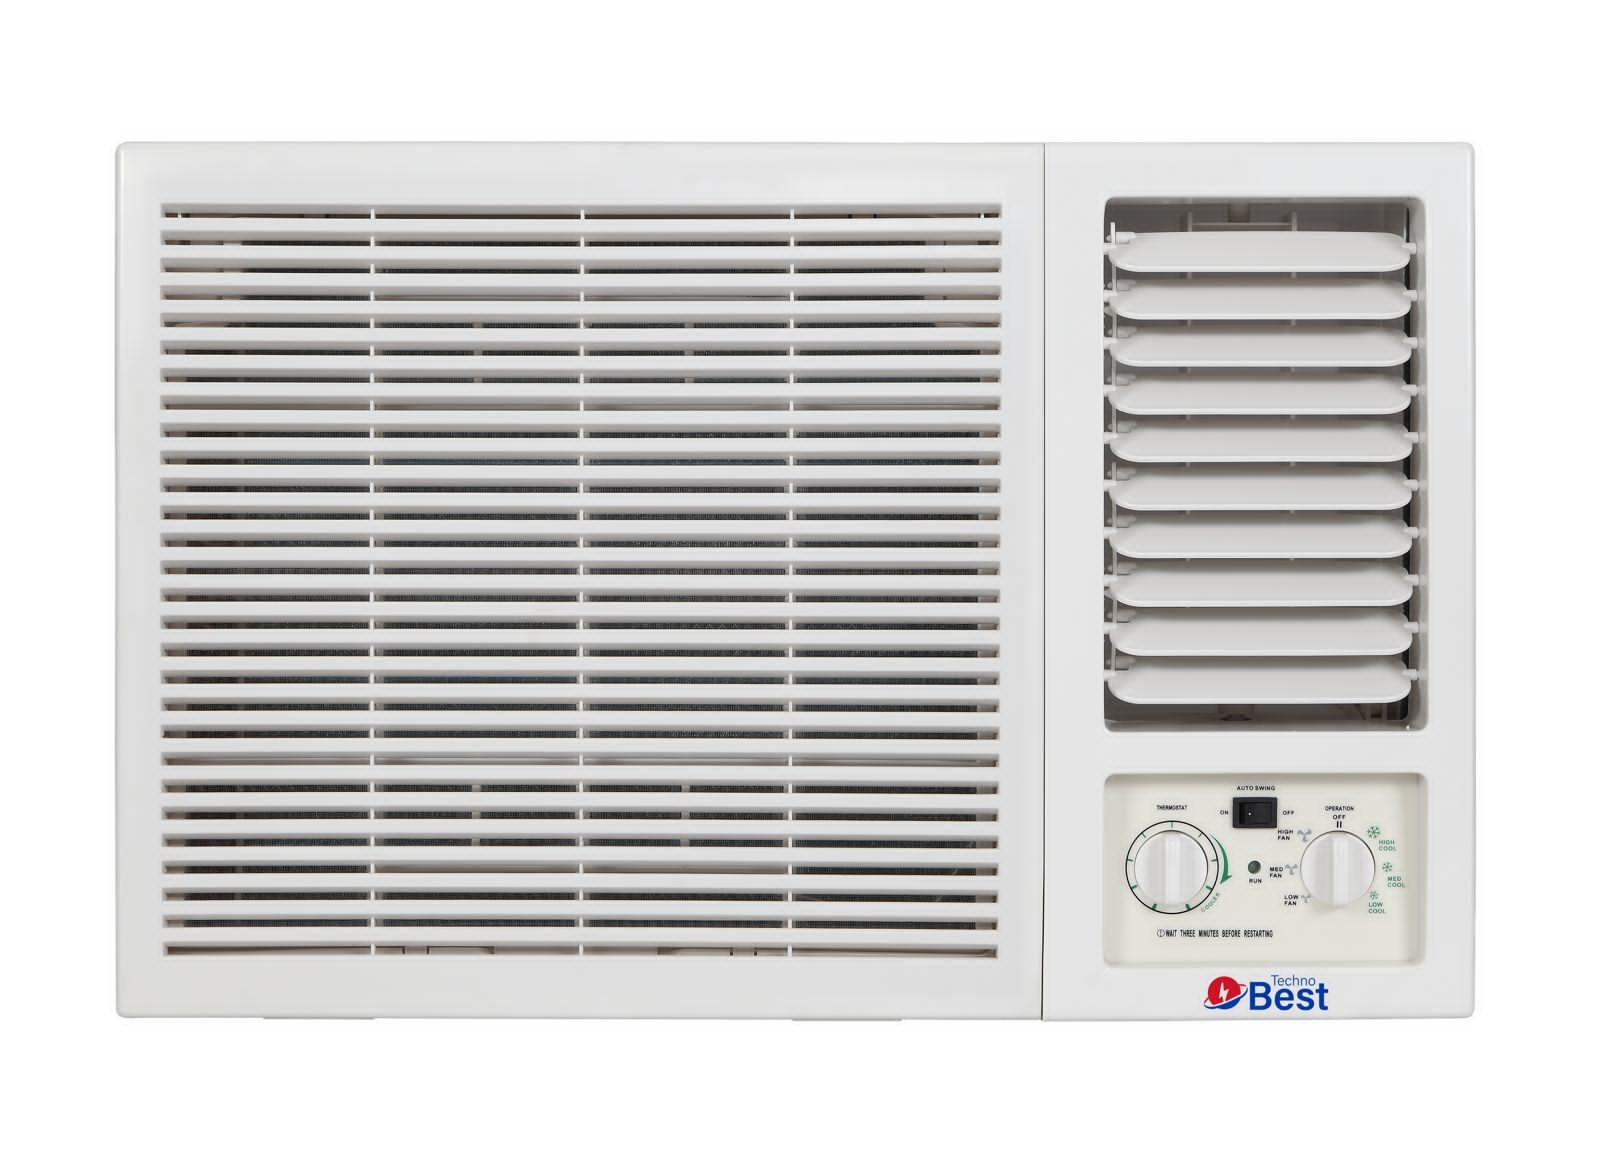 TECHNO BEST Window Air Conditioner, 20000 BTU, Cold, Quiet Sound - BWAC-024C